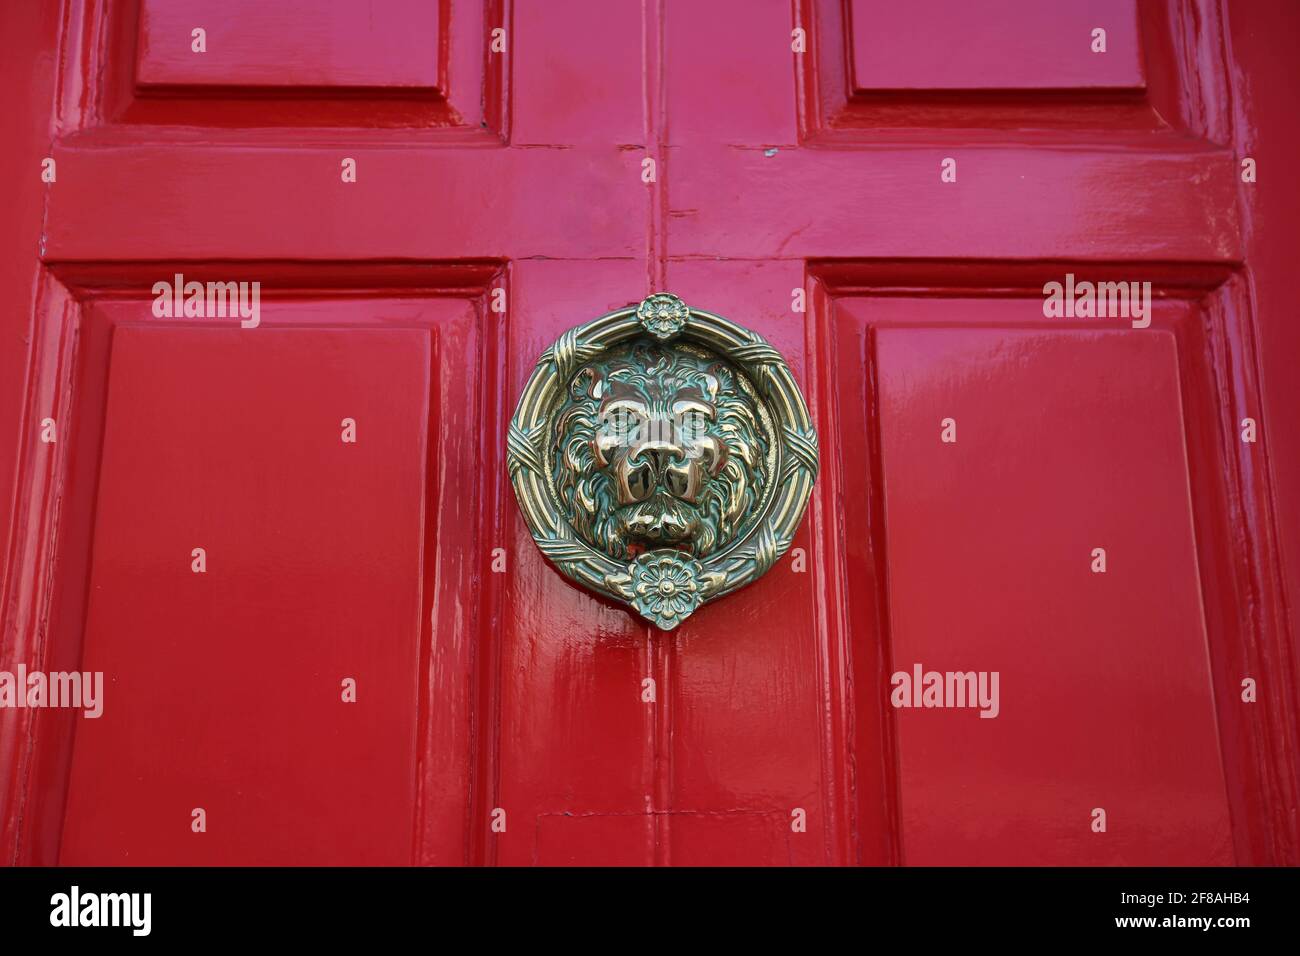 Lion head door knocker on the red door Stock Photo